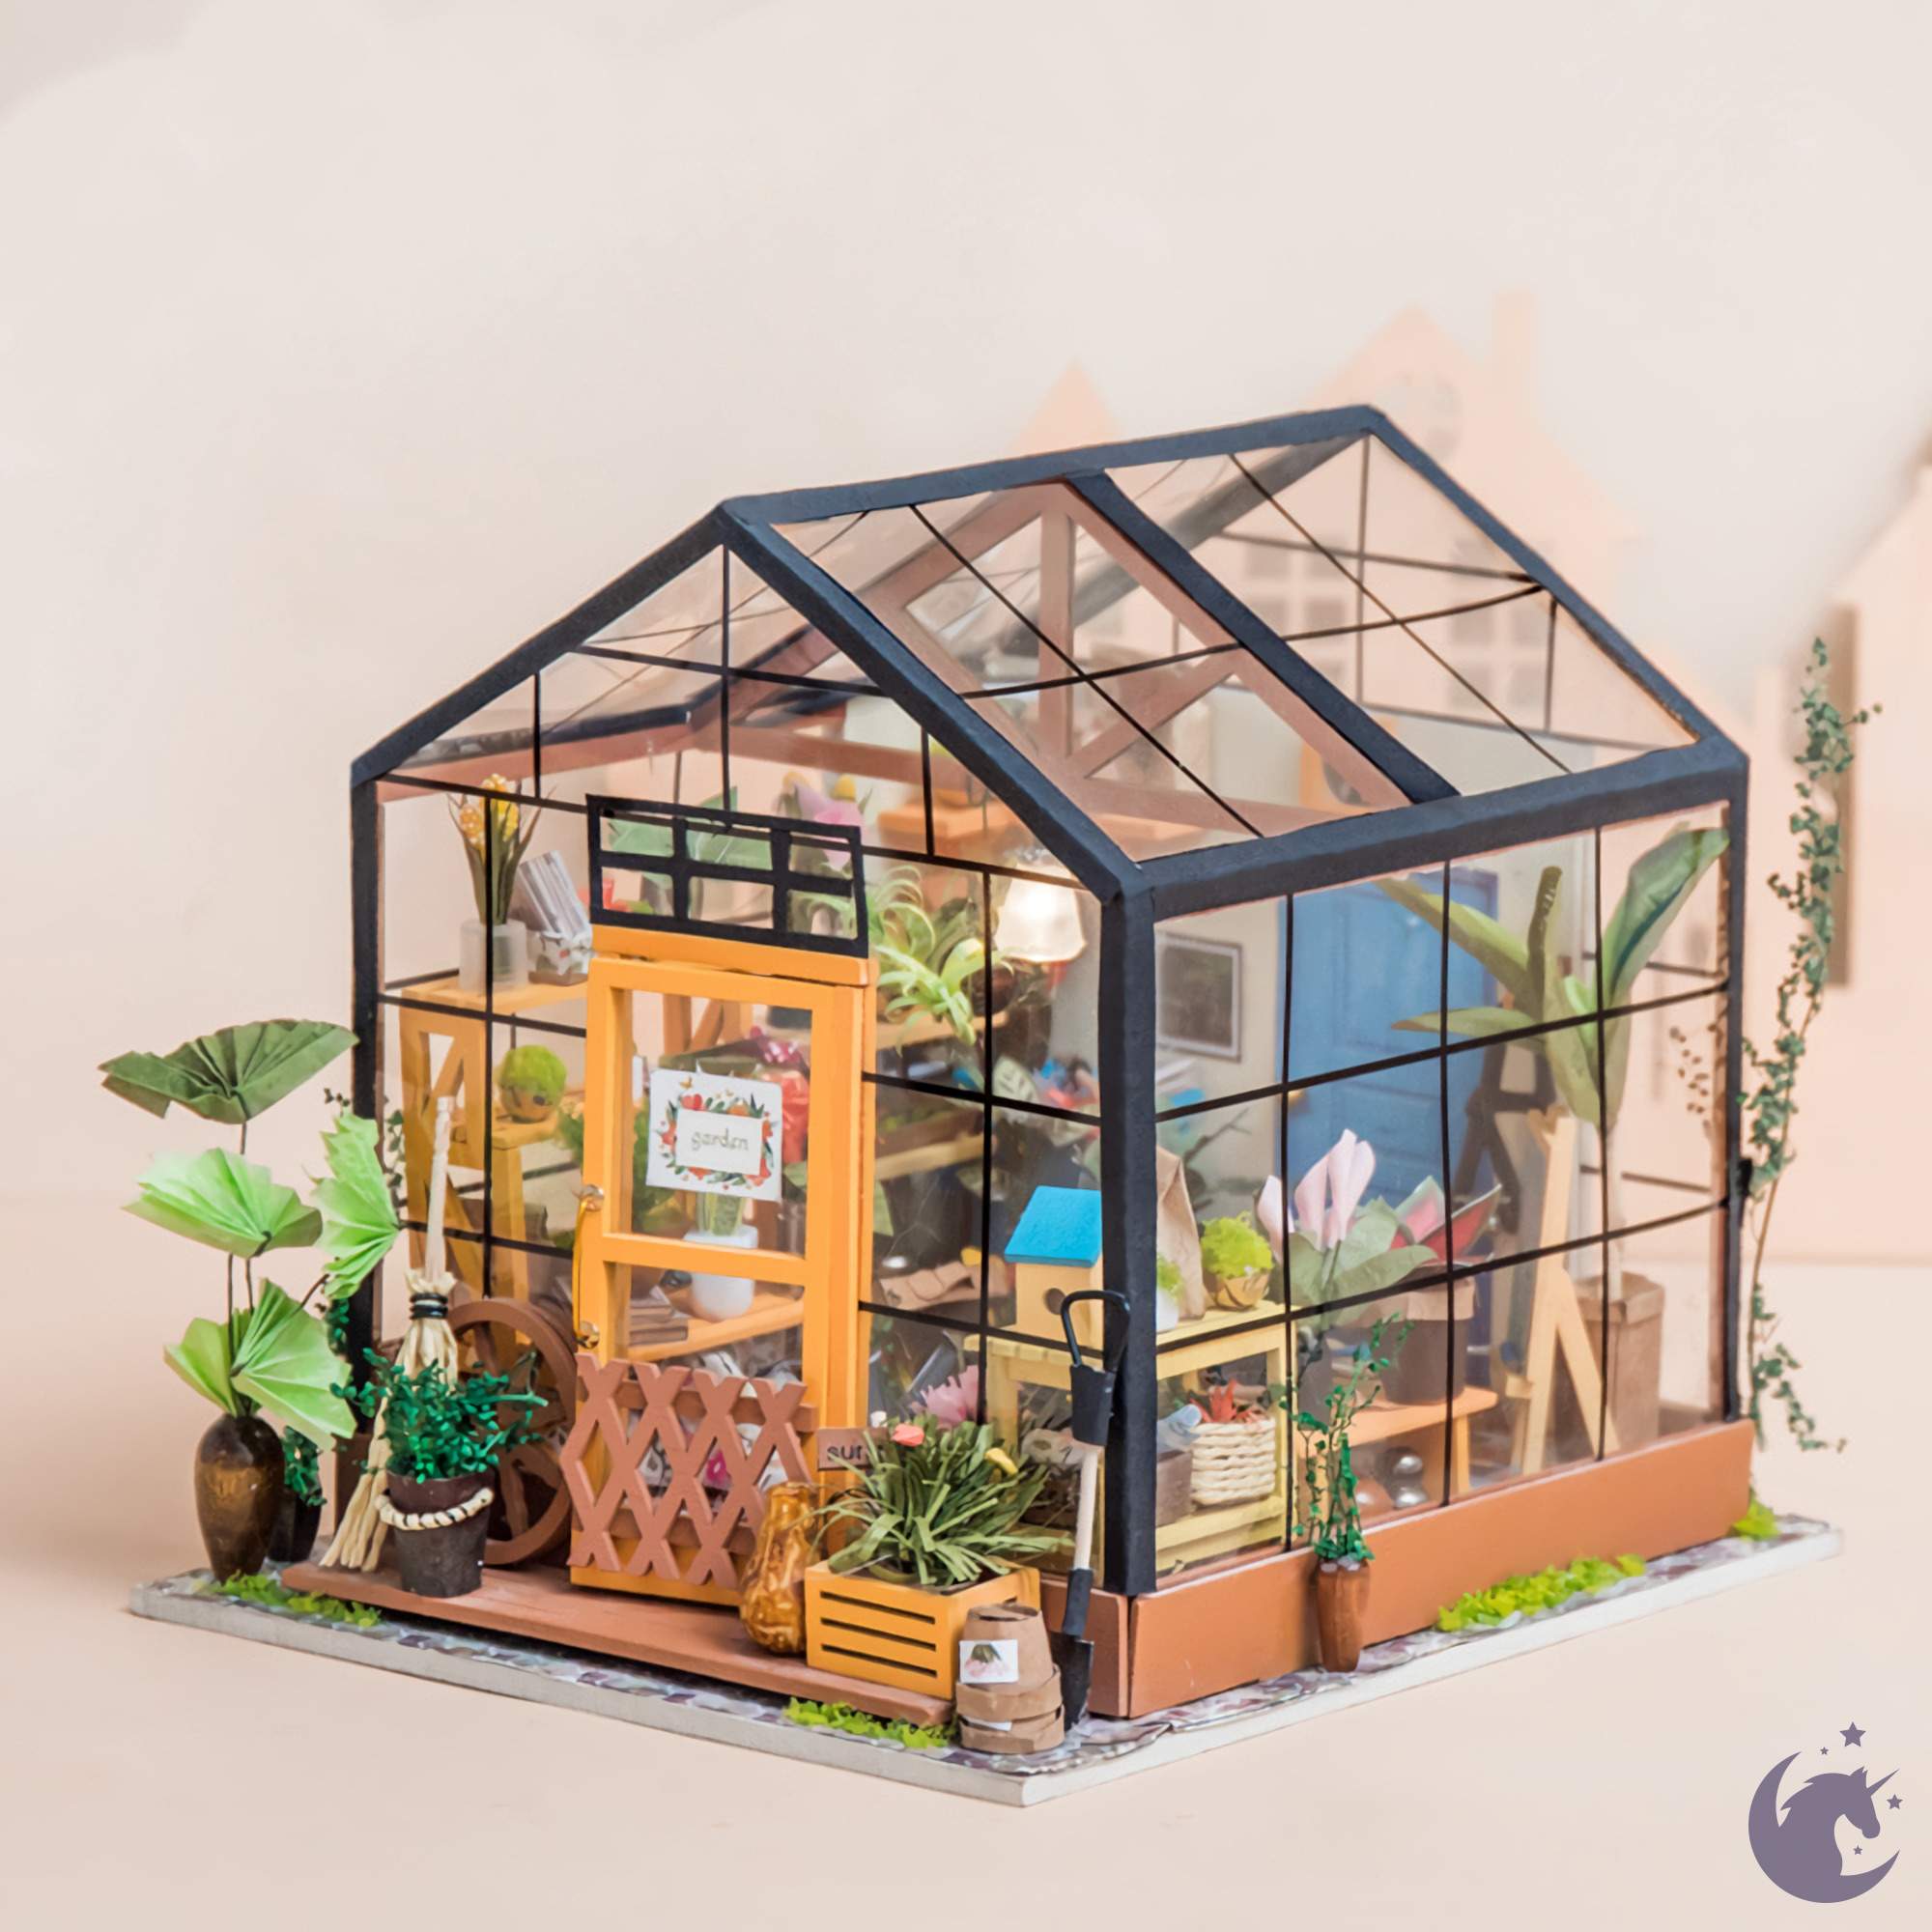 Cathy's Loft DIY Miniature Dollhouse